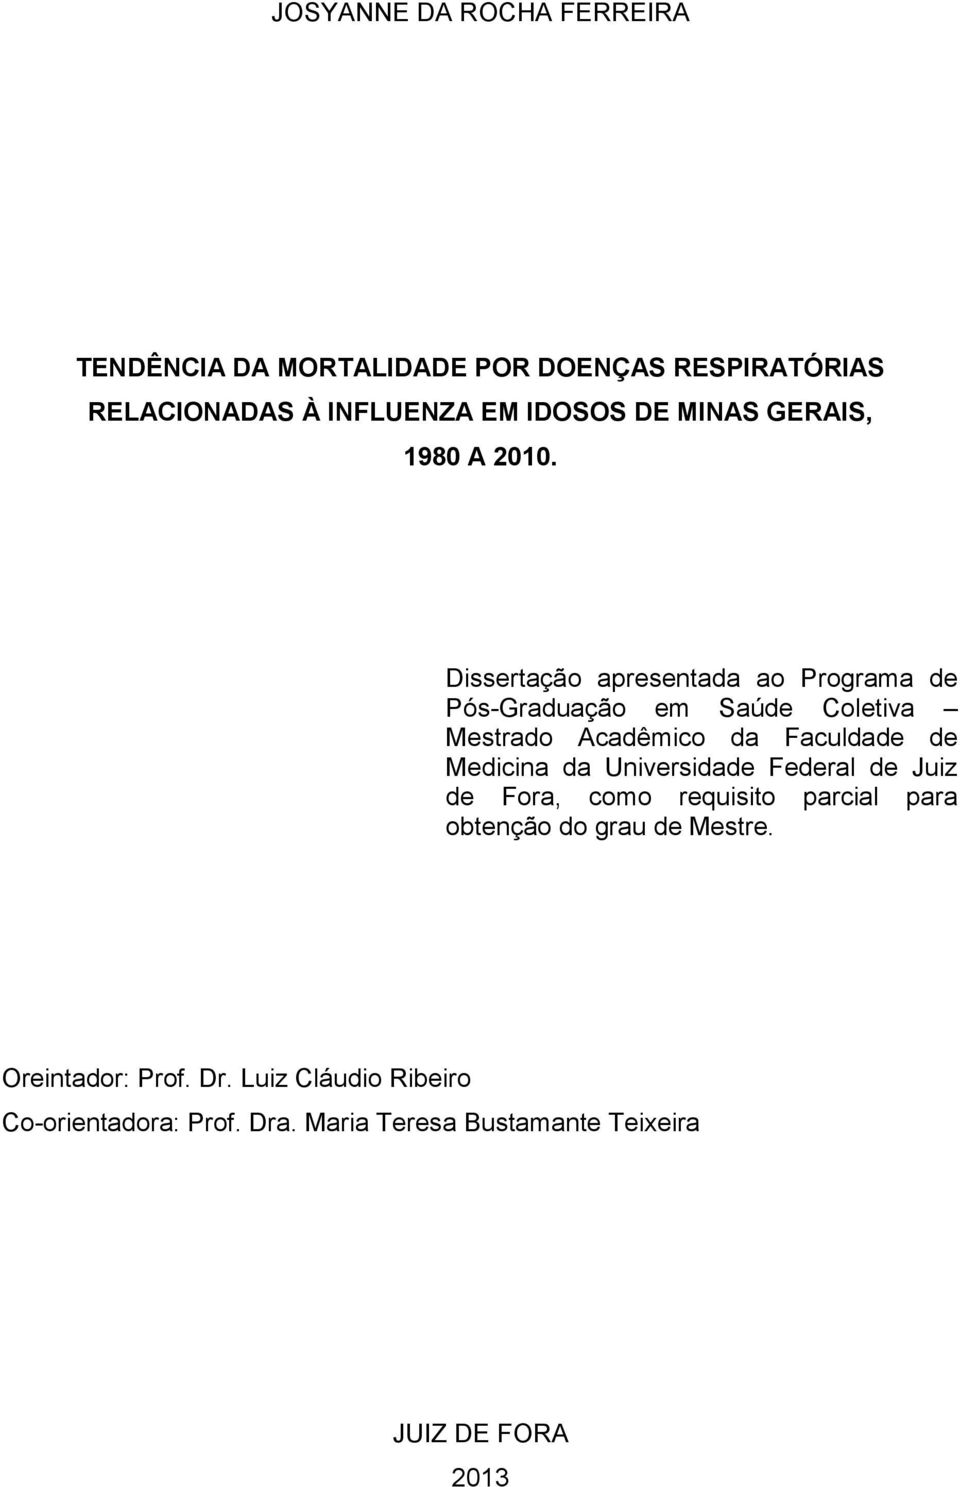 Dissertação apresentada ao Programa de Pós-Graduação em Saúde Coletiva Mestrado Acadêmico da Faculdade de Medicina da